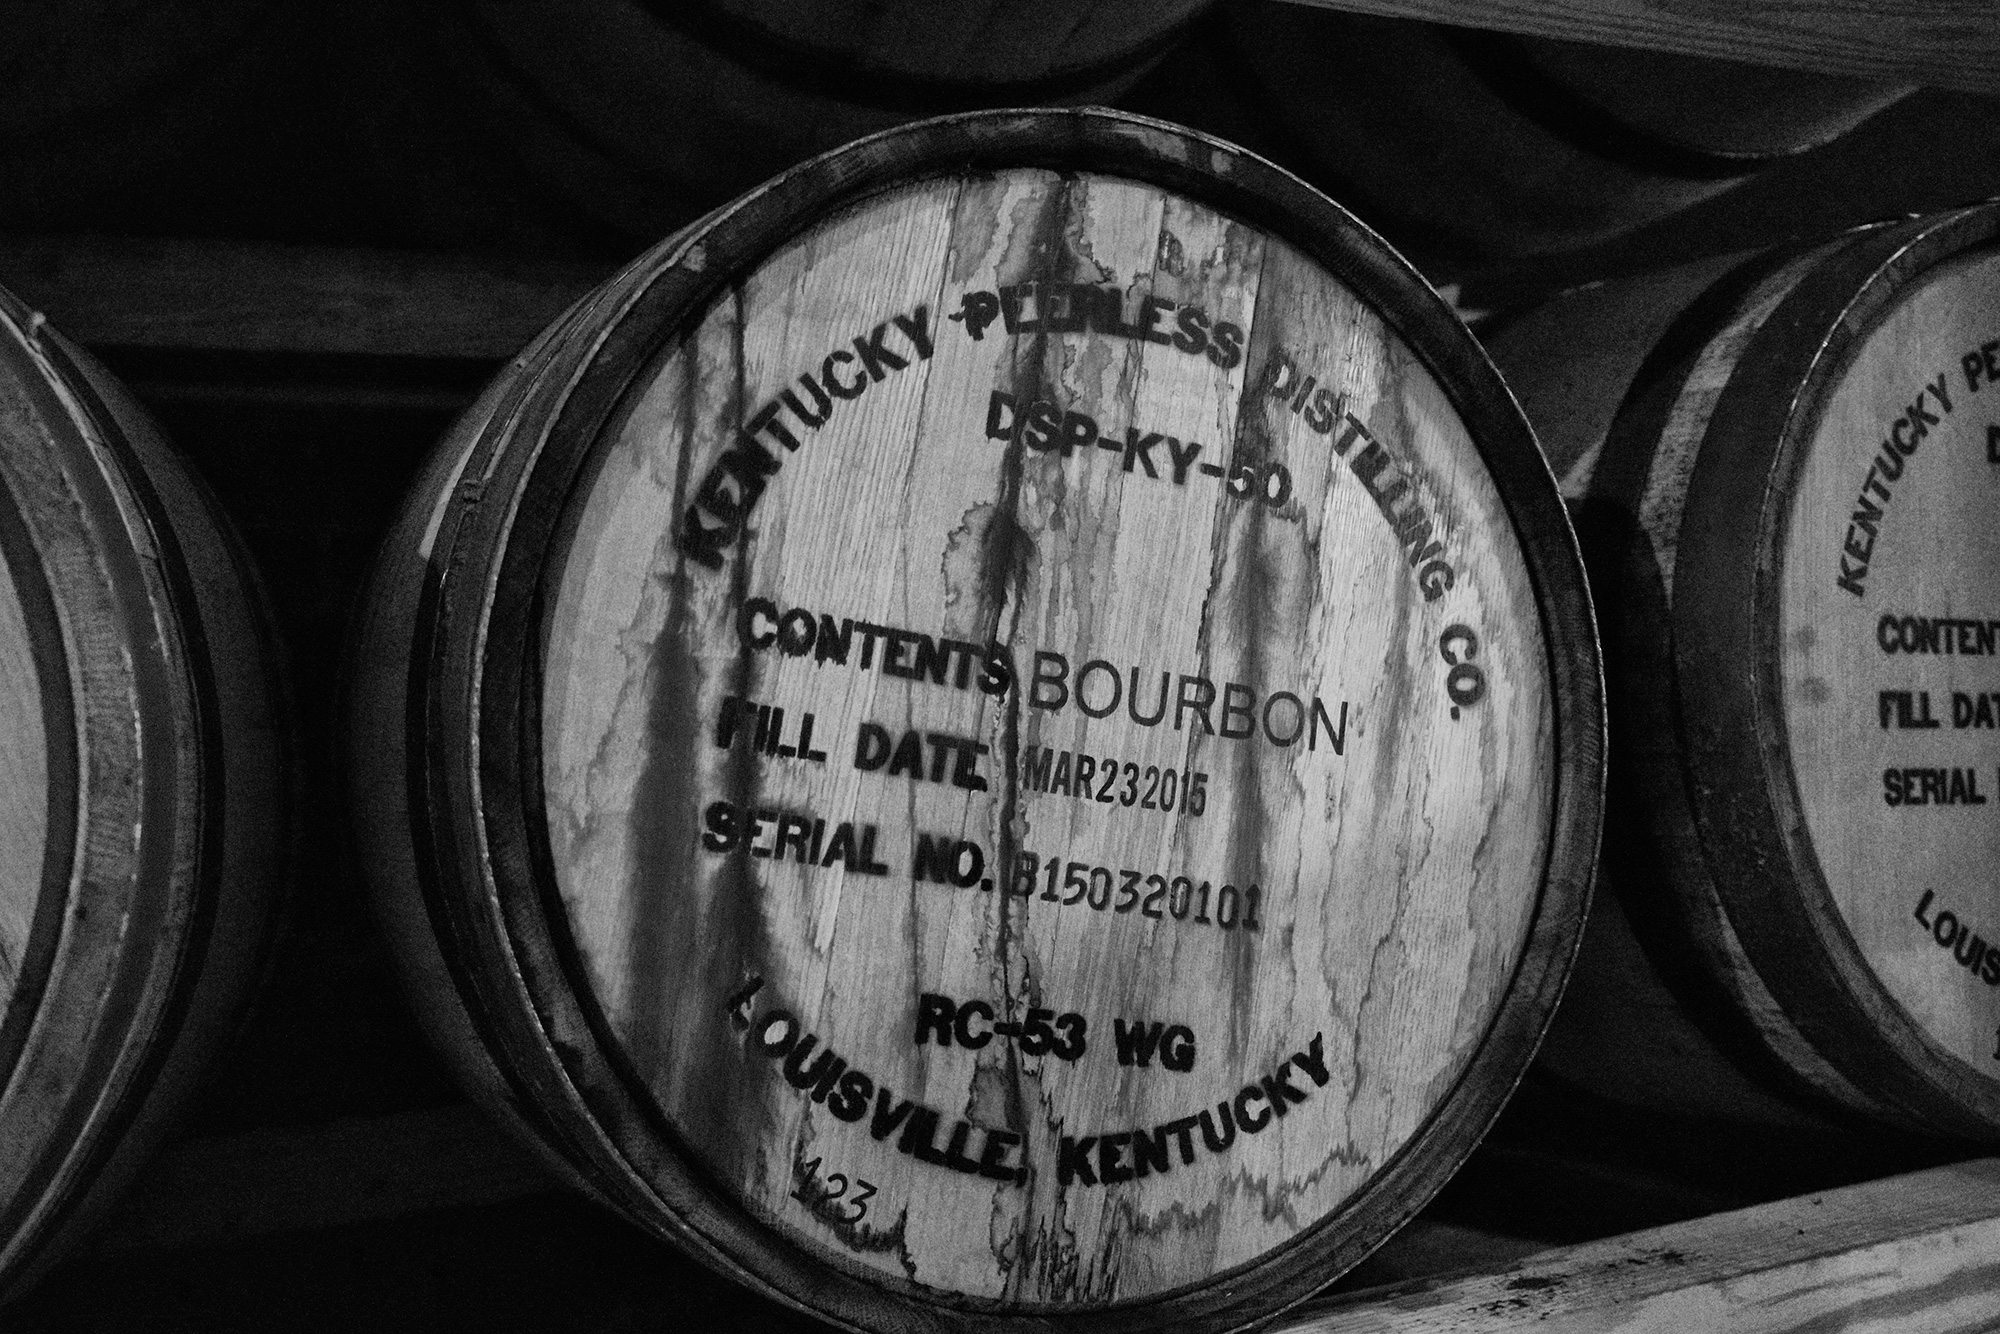 Kentucky Peerless distillery